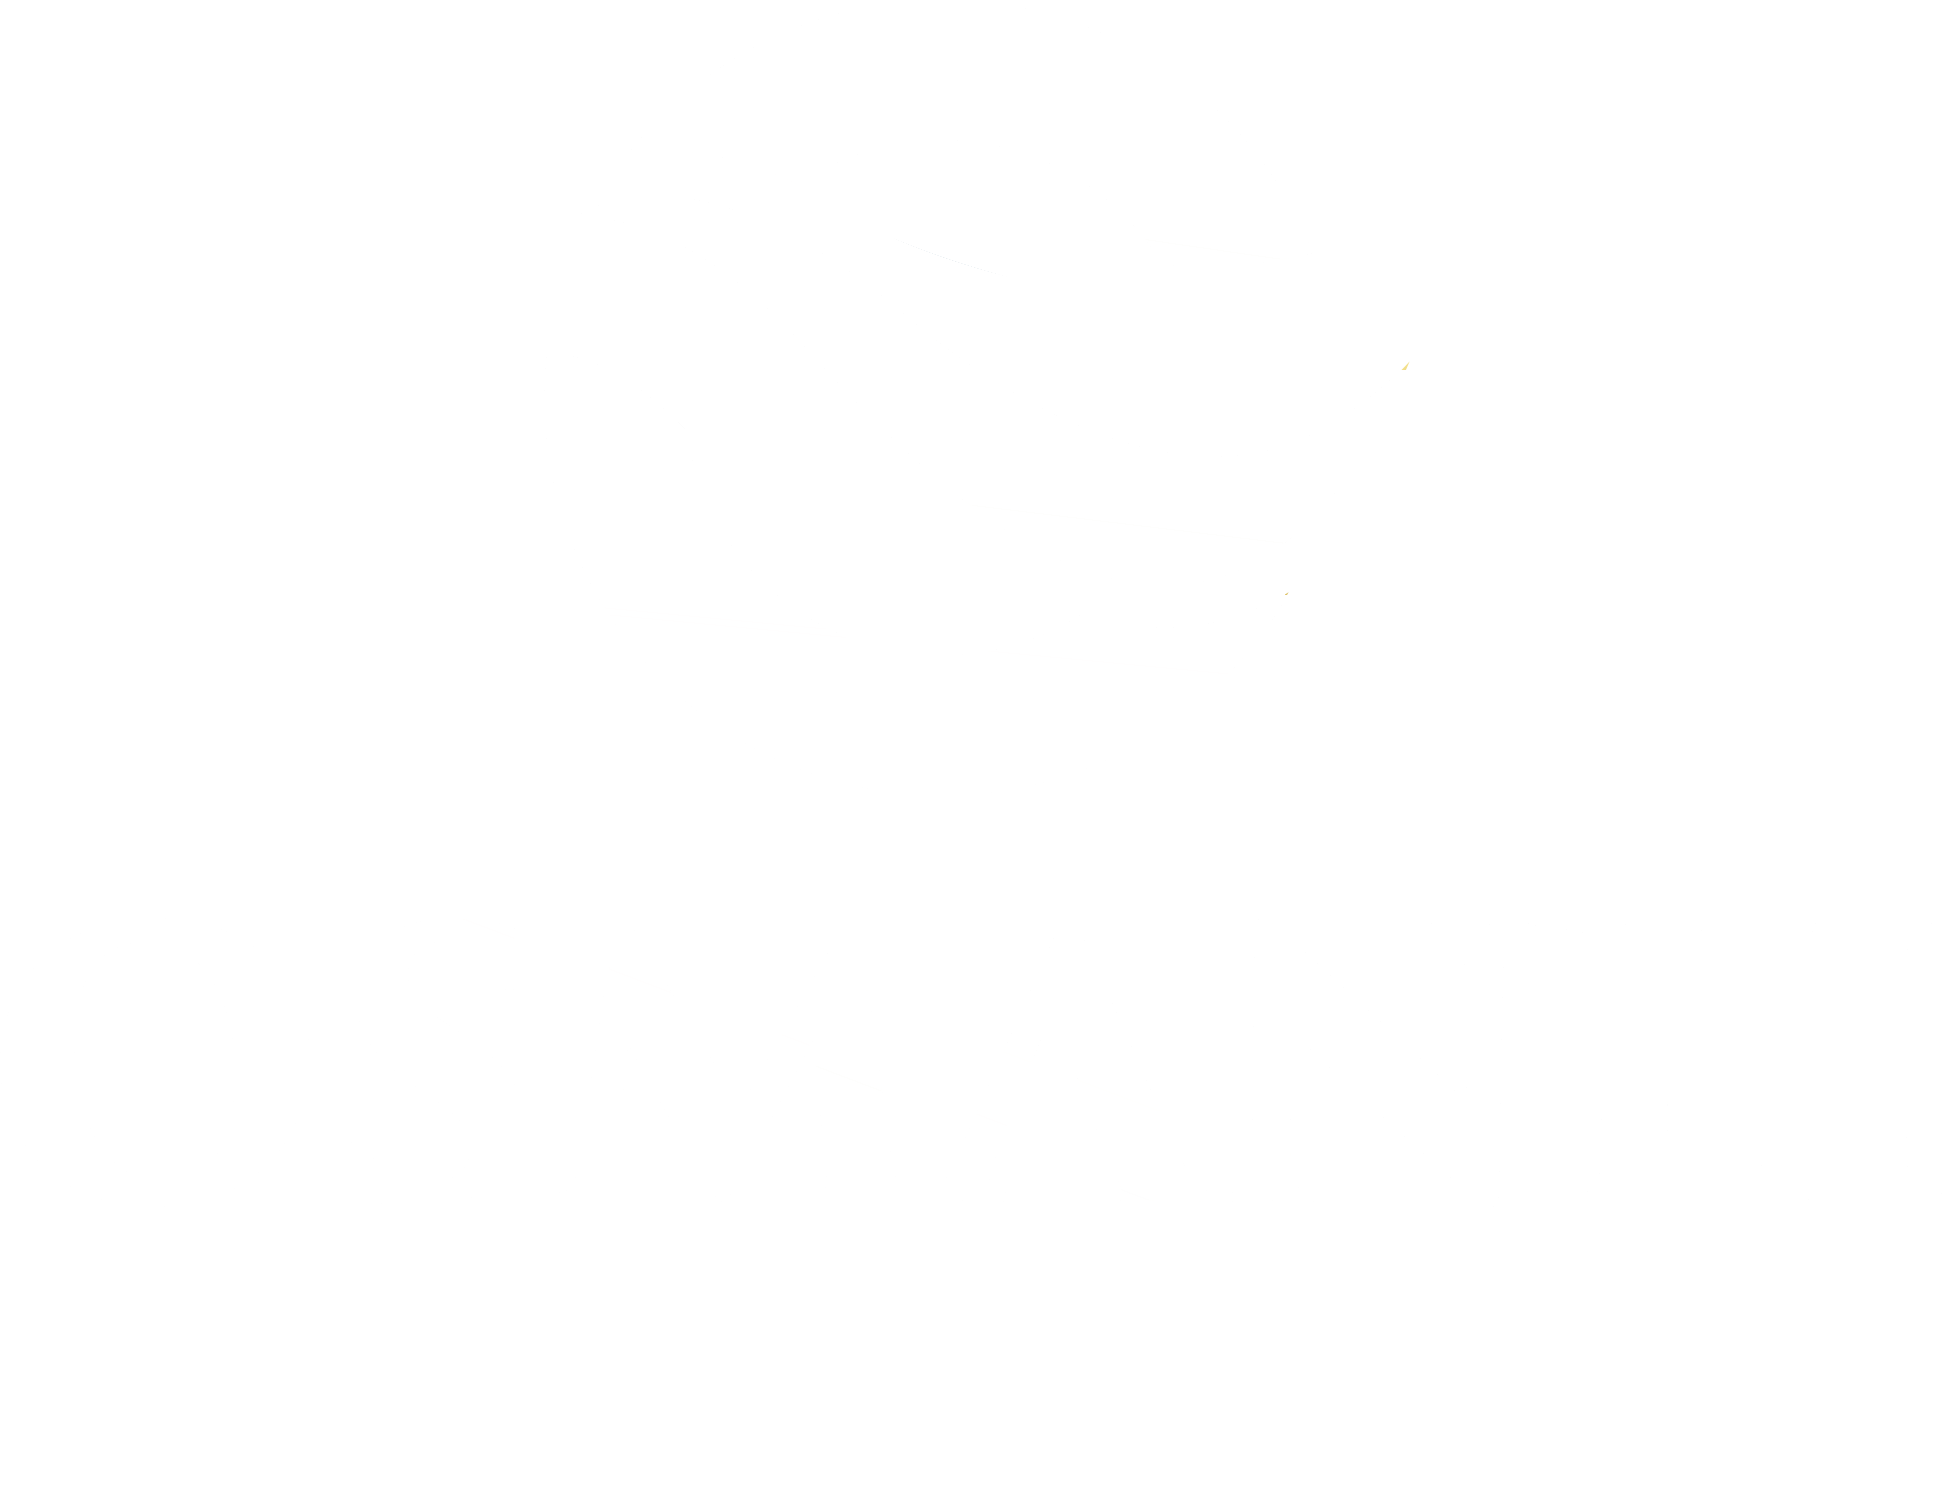 Osmanlı Şirketler Grubu